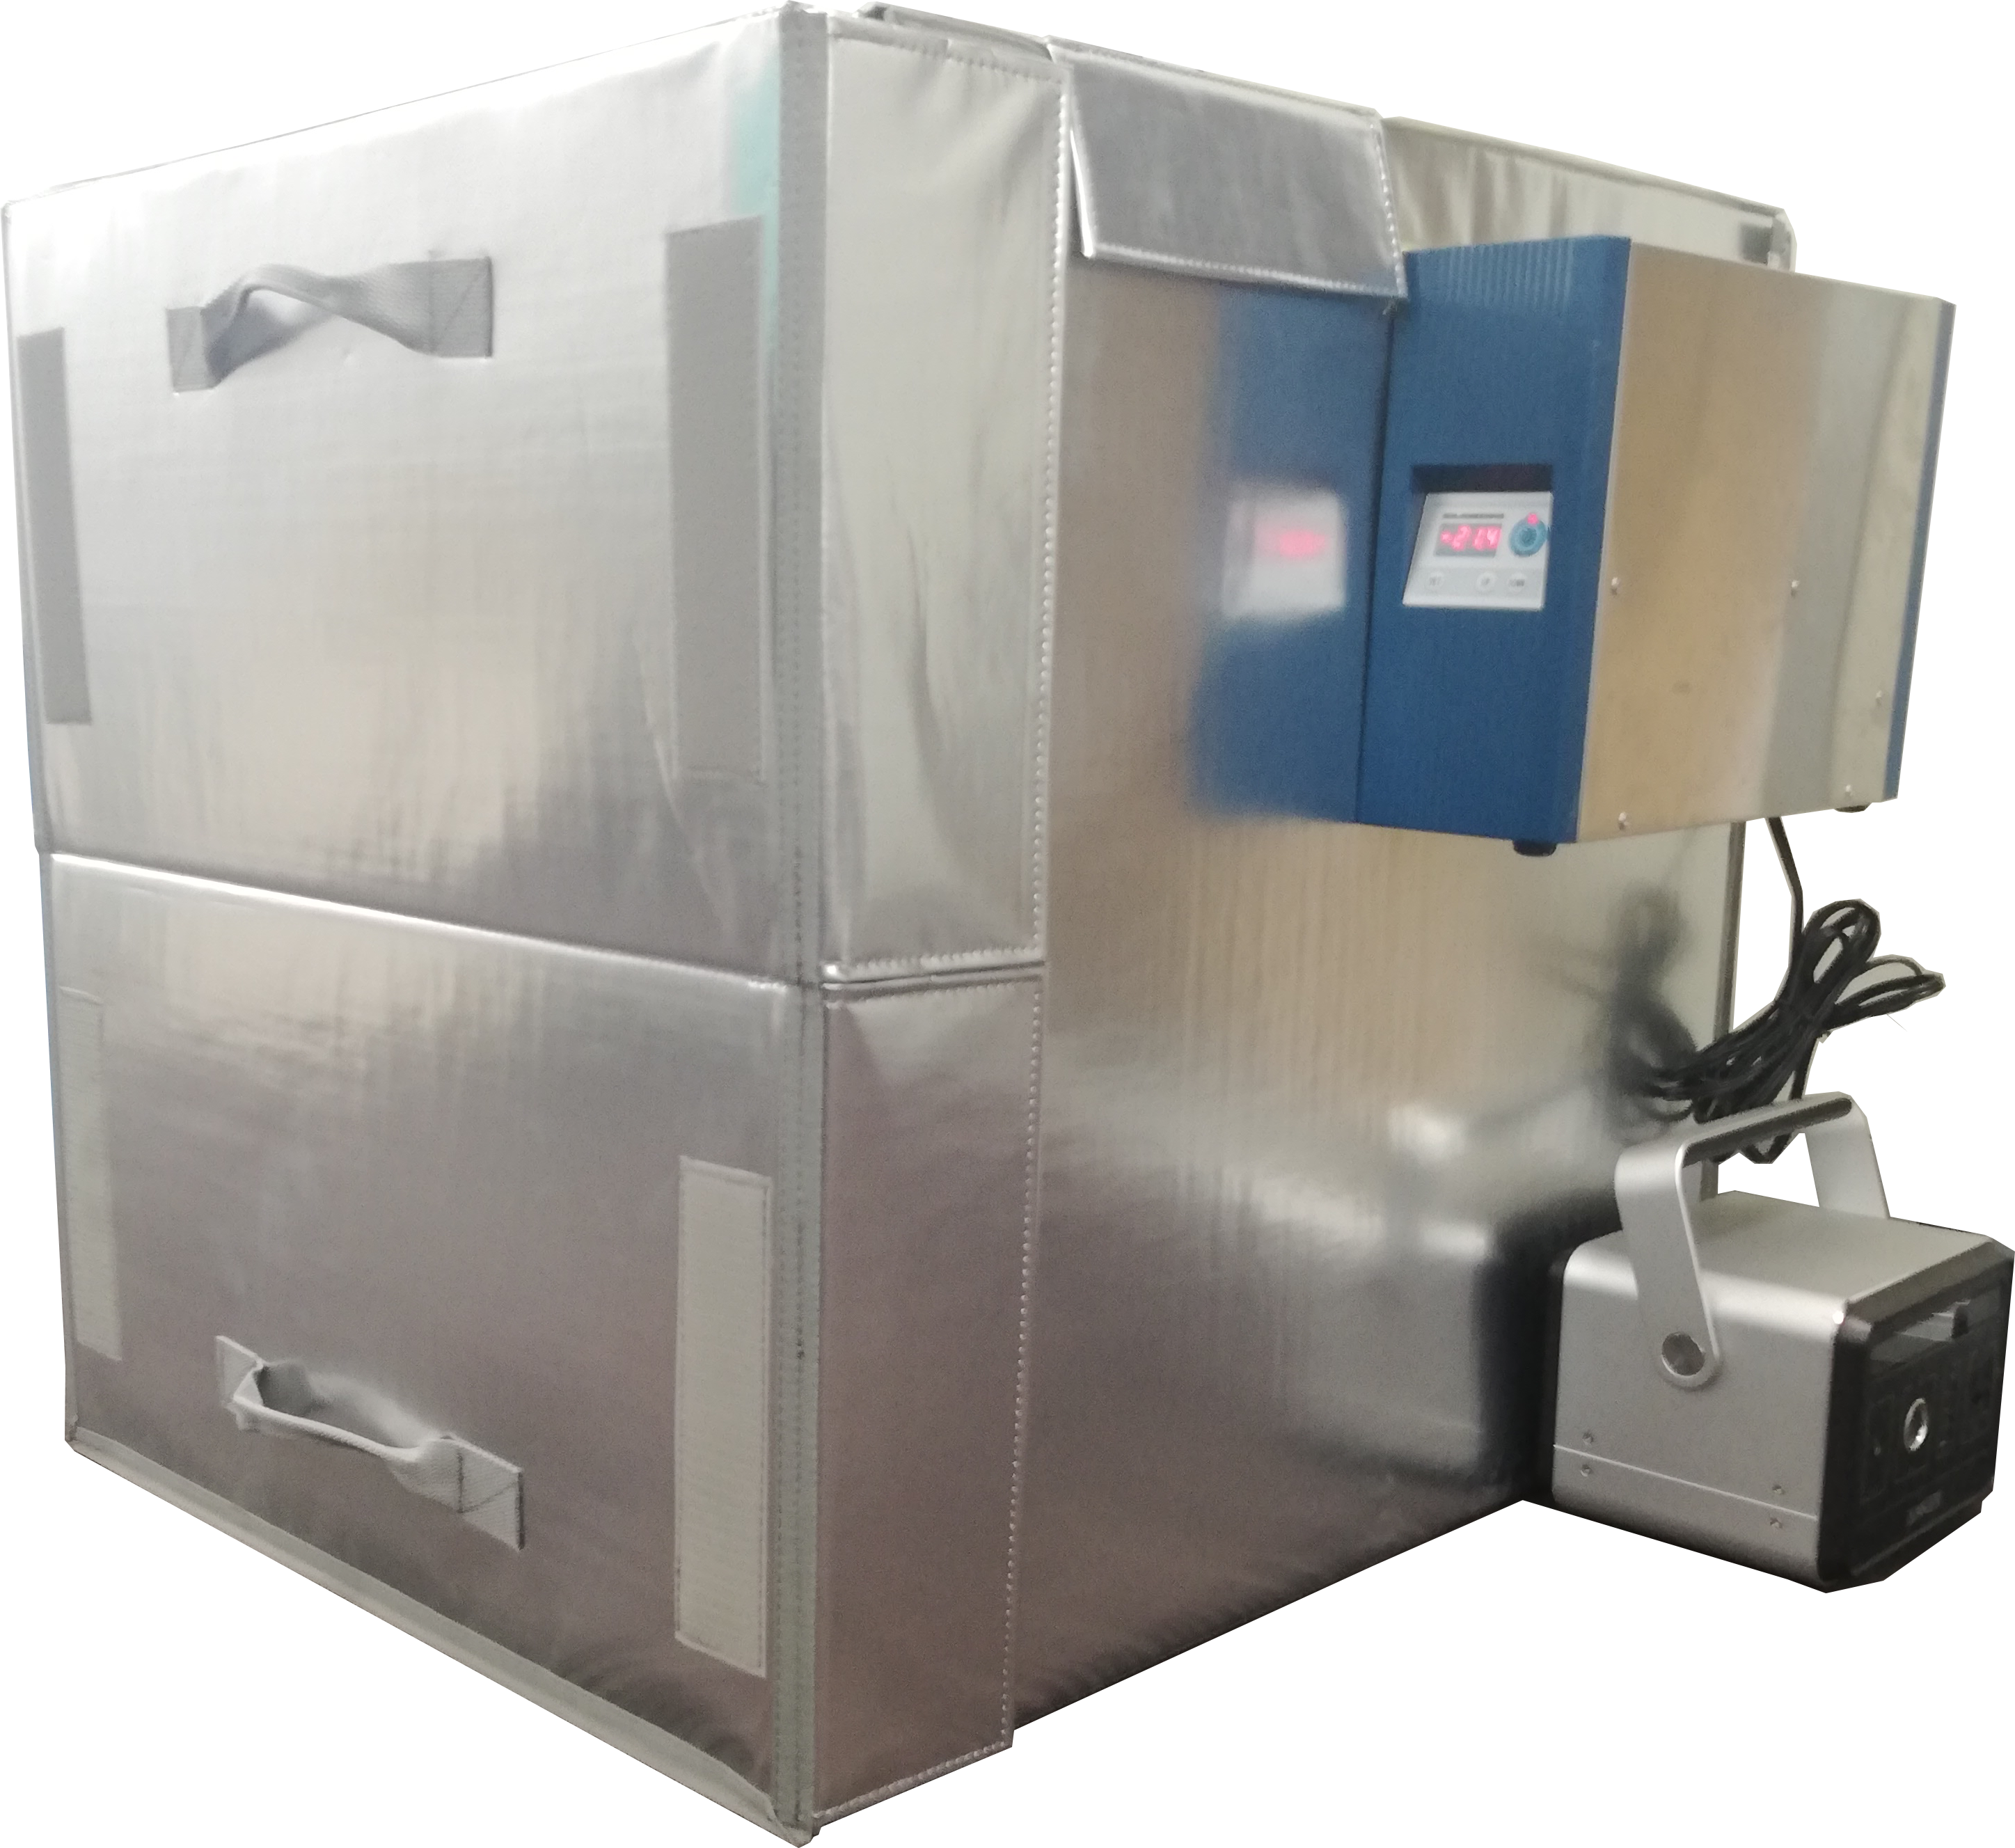 「常温車で冷凍食材を輸送する」冷却ユニット付き保冷箱の製作事例